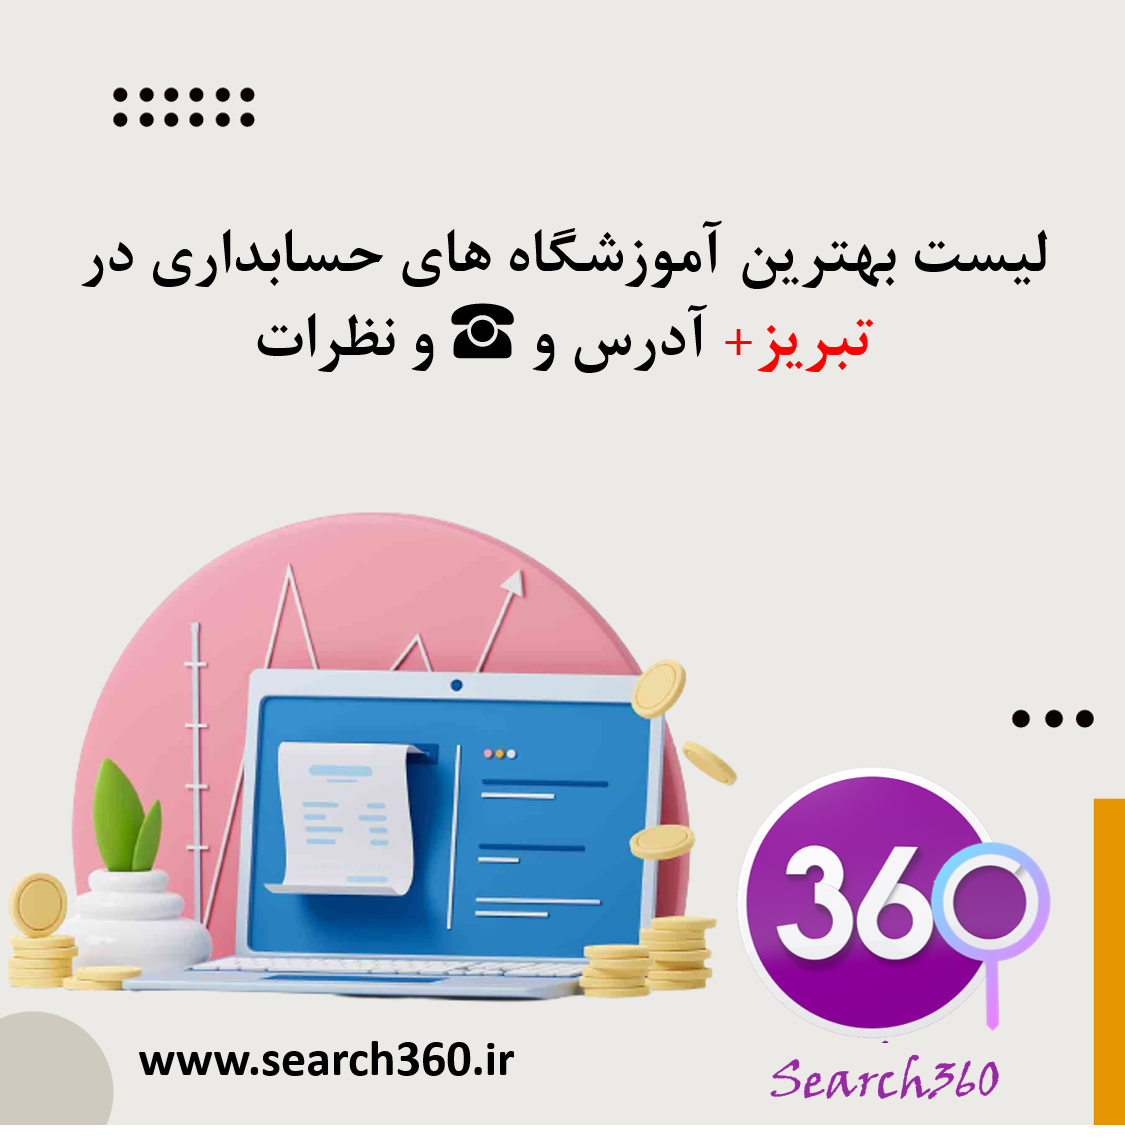 لیست بهترین آموزشگاه های حسابداری در تبریز با آدرس و تلفن ☎️ و نظرات